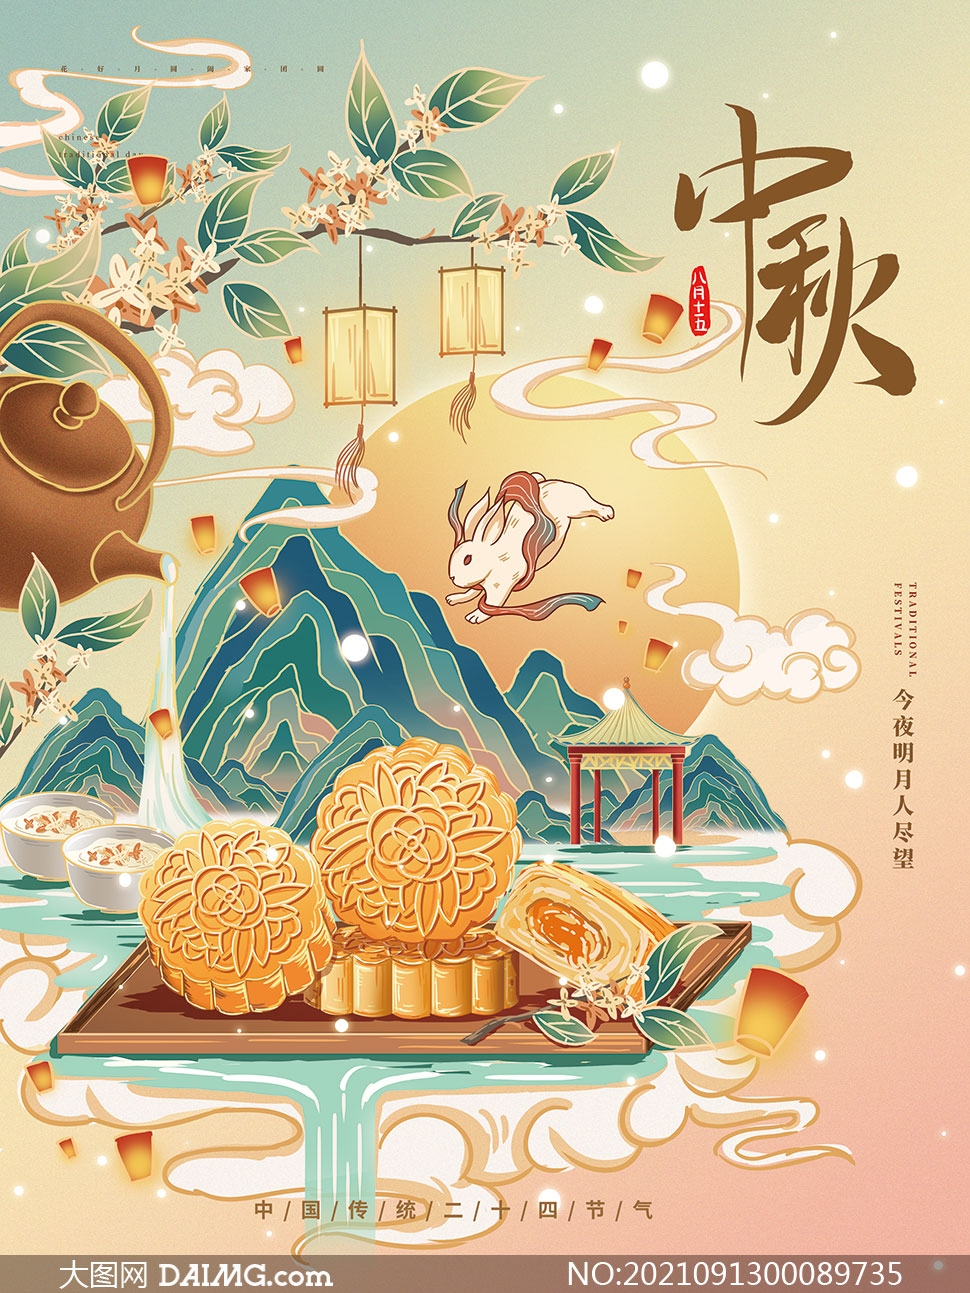 中式风格中秋节活动海报设计psd模板